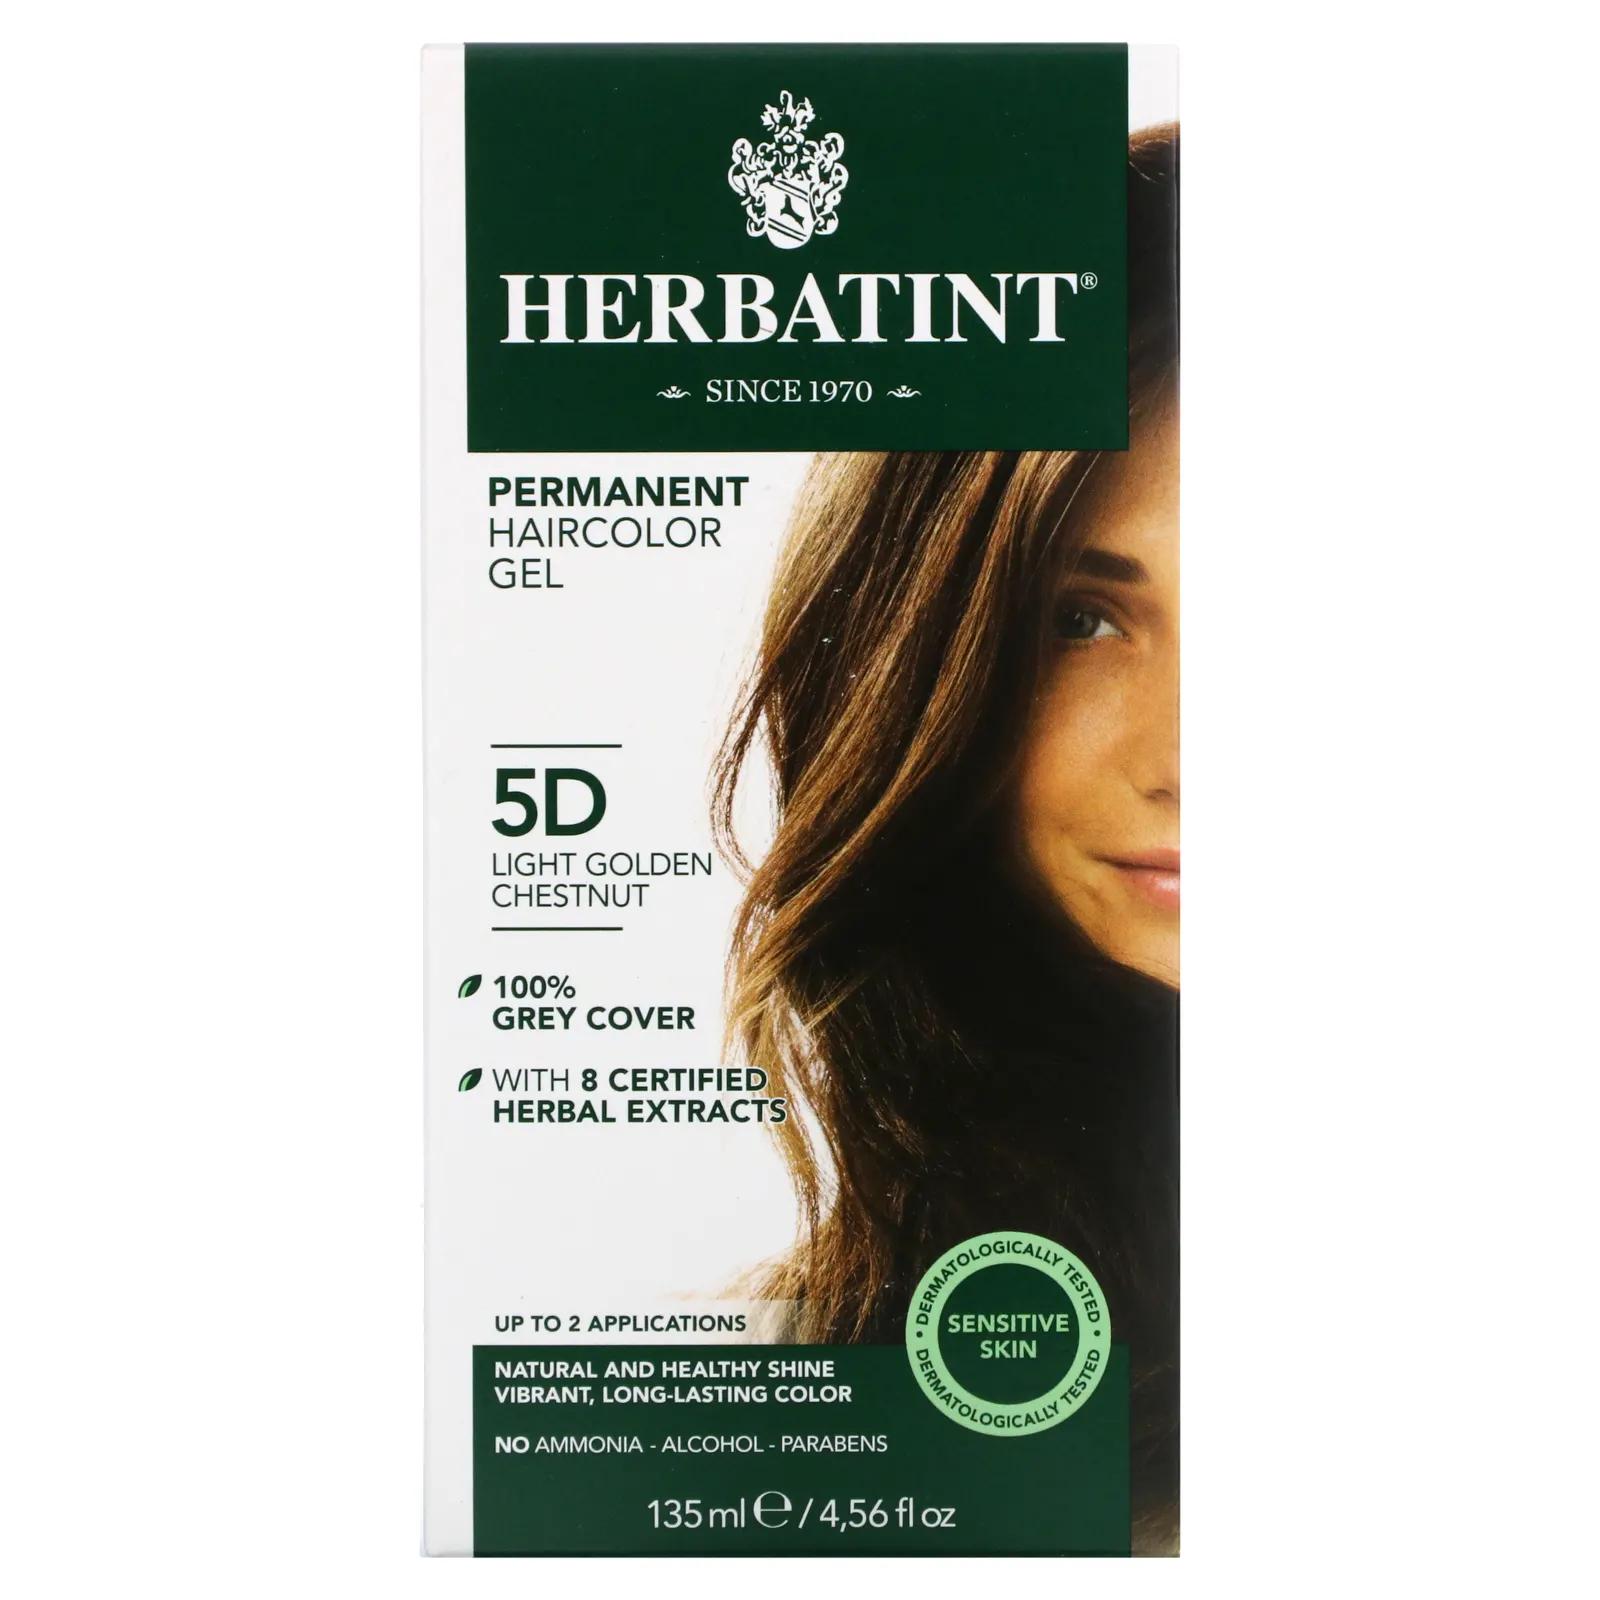 Herbatint Перманентная краска-гель для волос 5D светлый золотистый каштан 4,56 жидкой унции (135 мл) перманентная гель краска для волос herbatint 5m светлый махагони каштан 135 мл